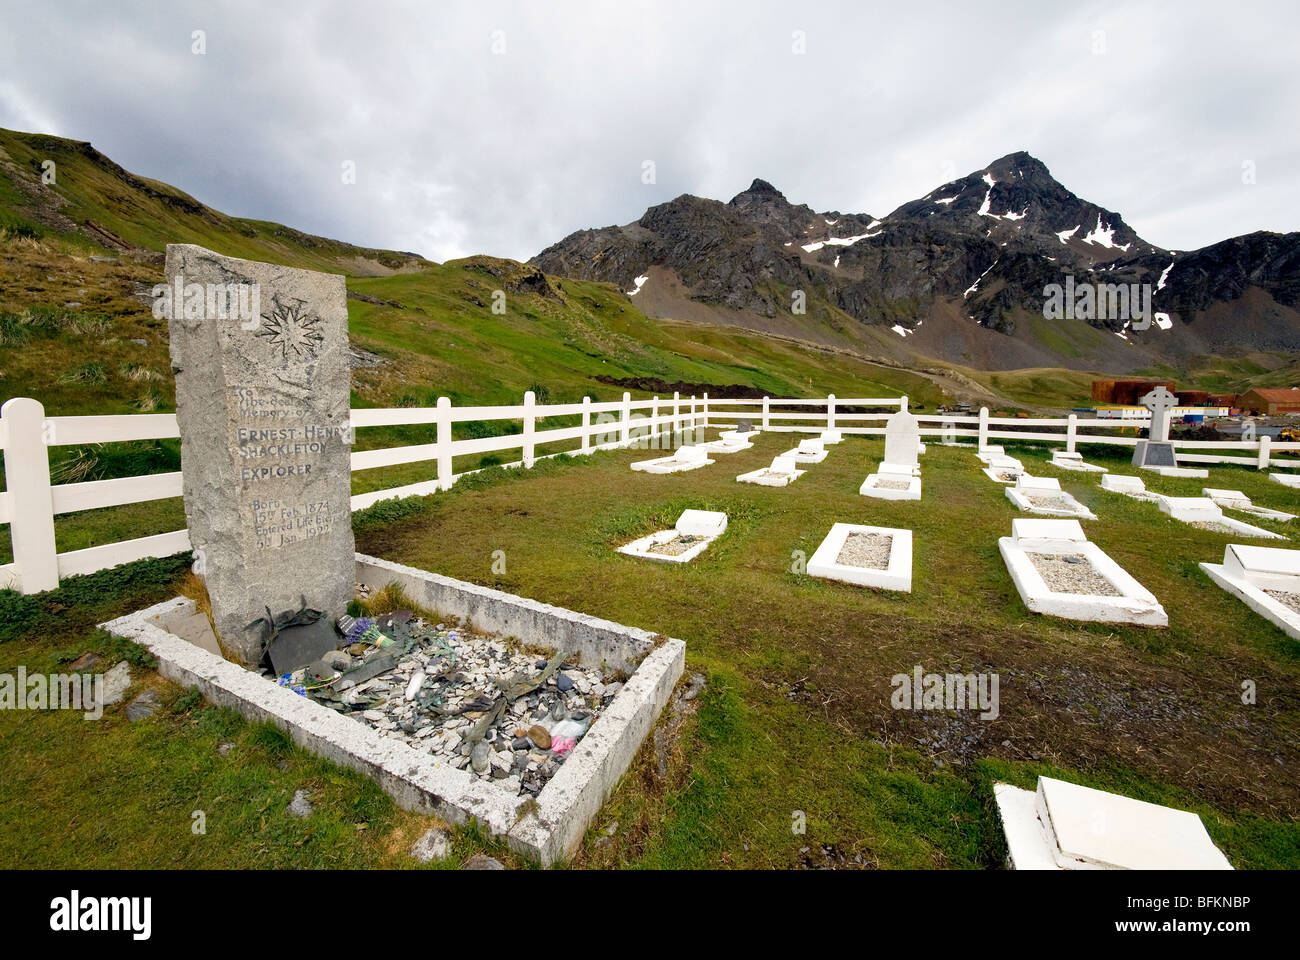 La Géorgie du Sud, l'Atlantique Sud Grytviken Shackleton tombe cimetière Banque D'Images